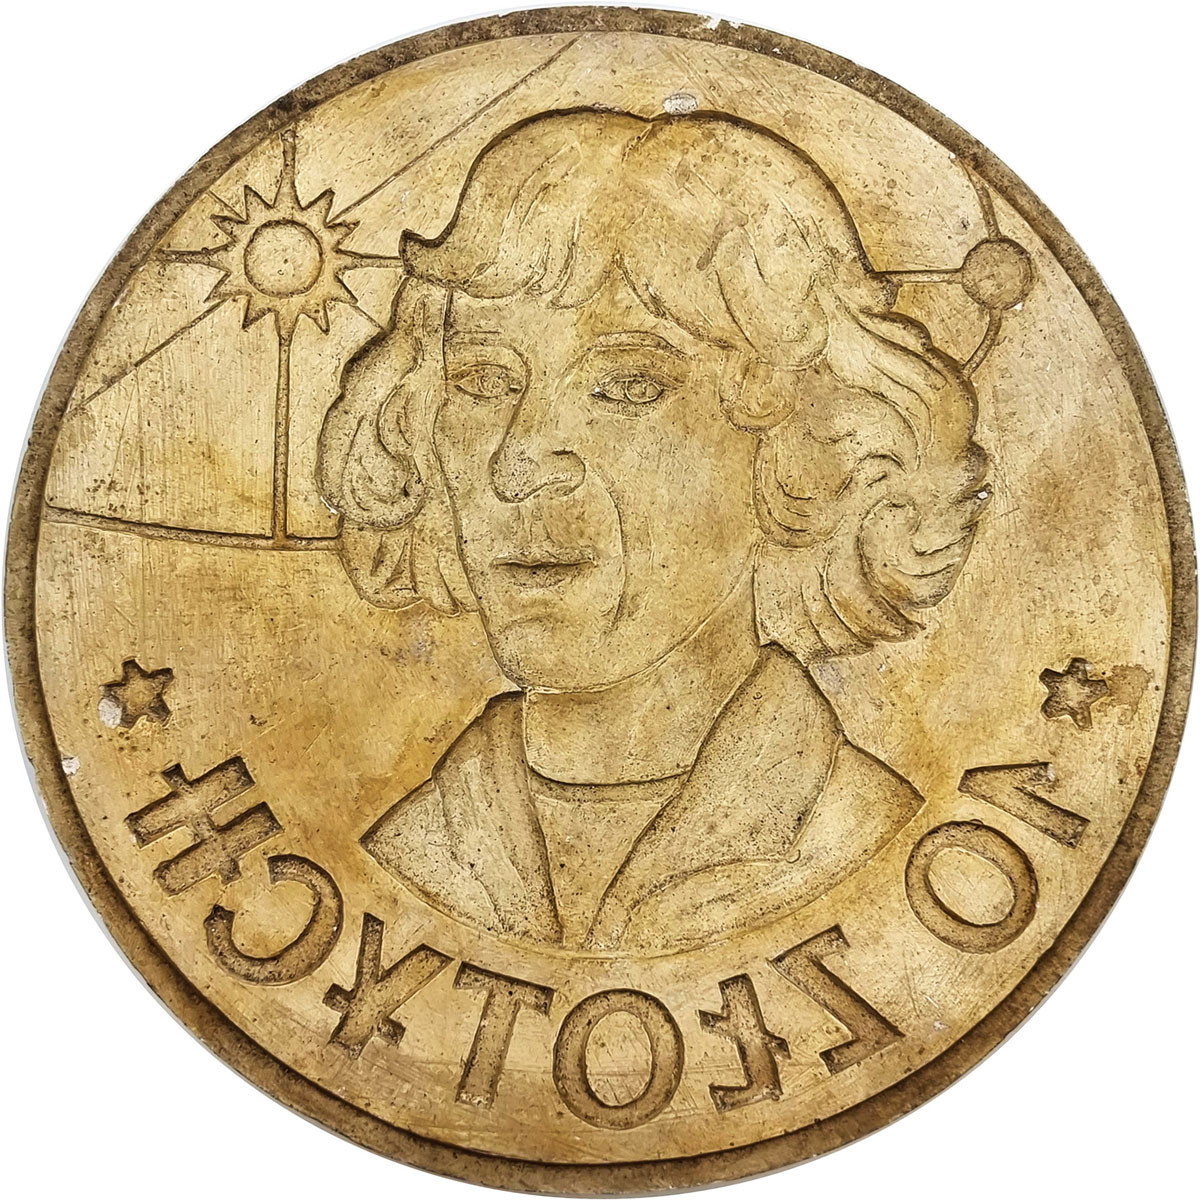 Próbny projekt gipsowy 10 złotych Mikołaj Kopernik - RZADKOŚĆ